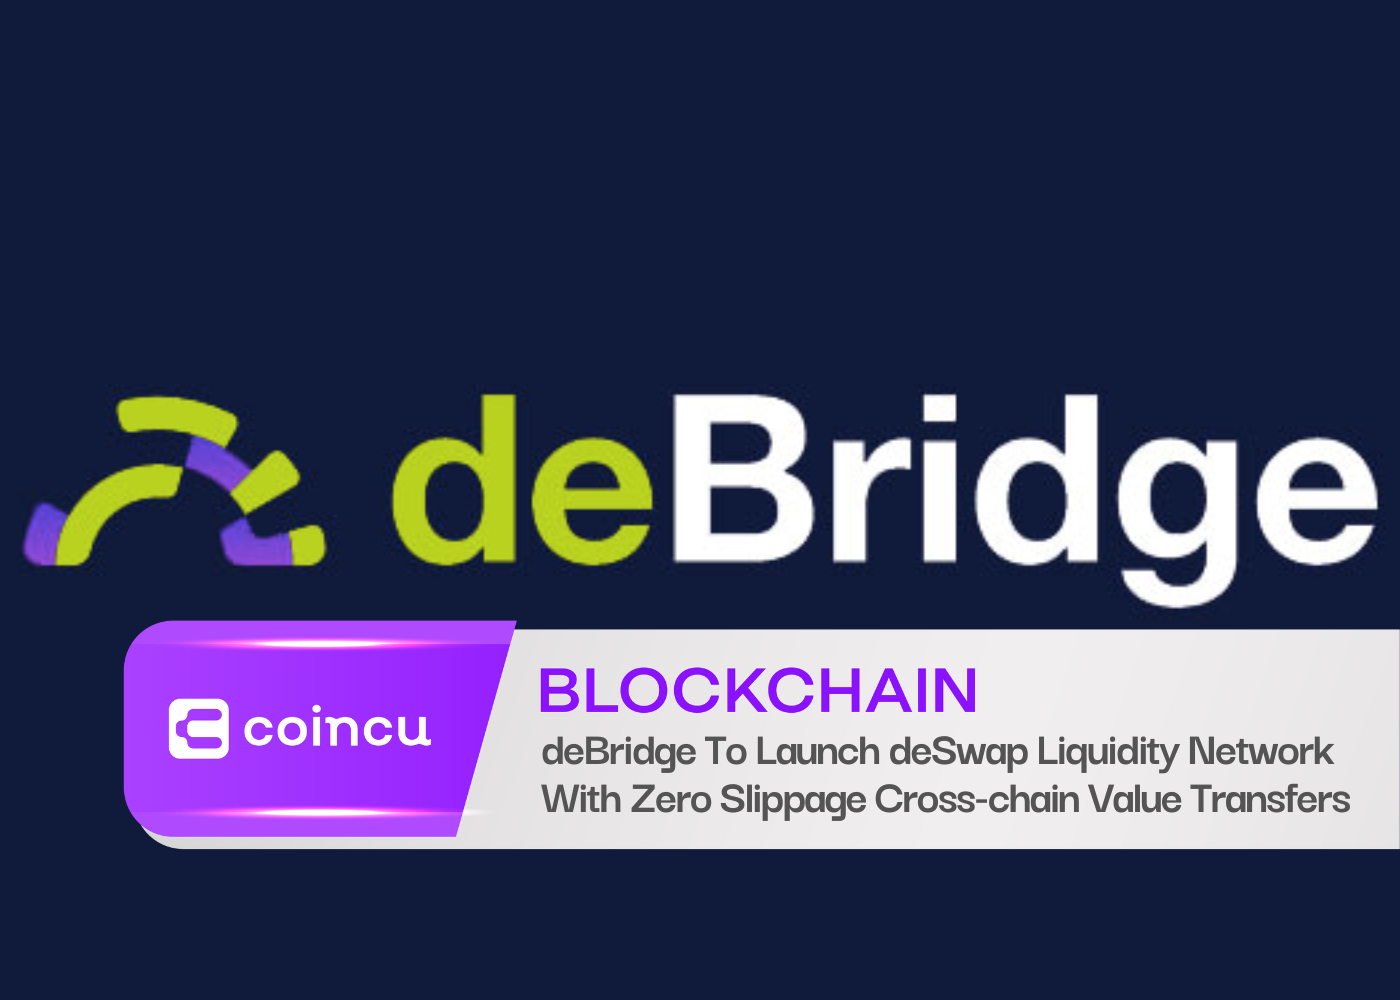 deBridge va lancer le réseau de liquidité deSwap avec des transferts de valeur inter-chaînes sans glissement